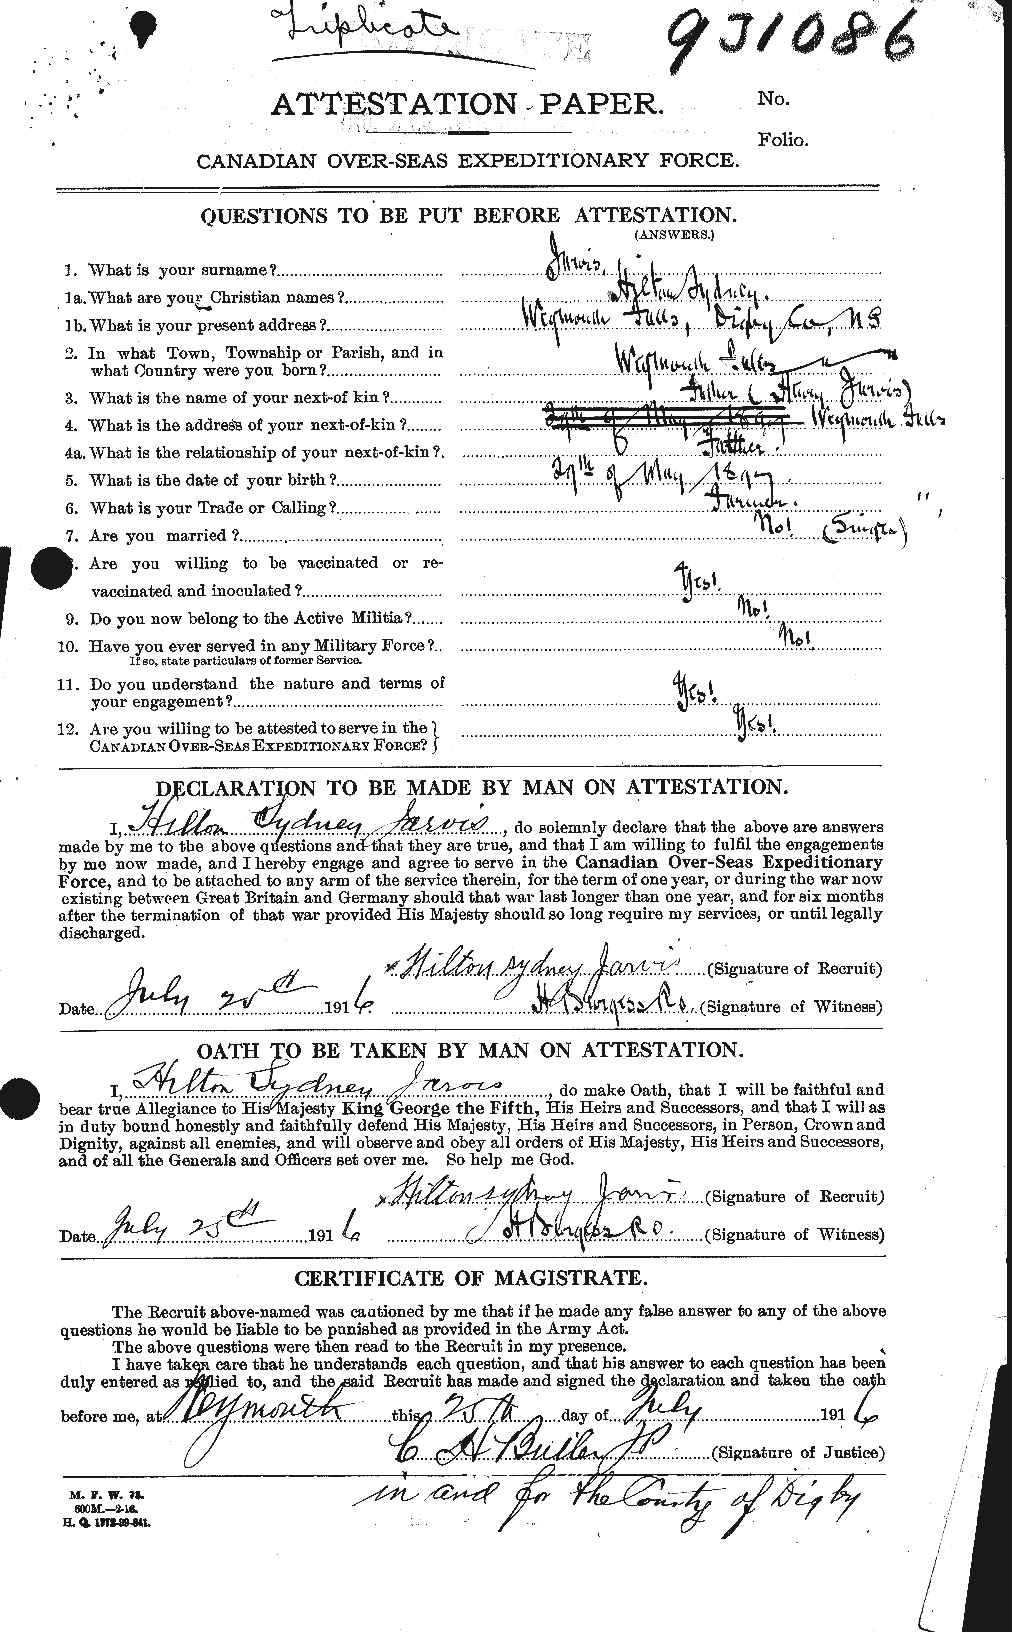 Dossiers du Personnel de la Première Guerre mondiale - CEC 414737a